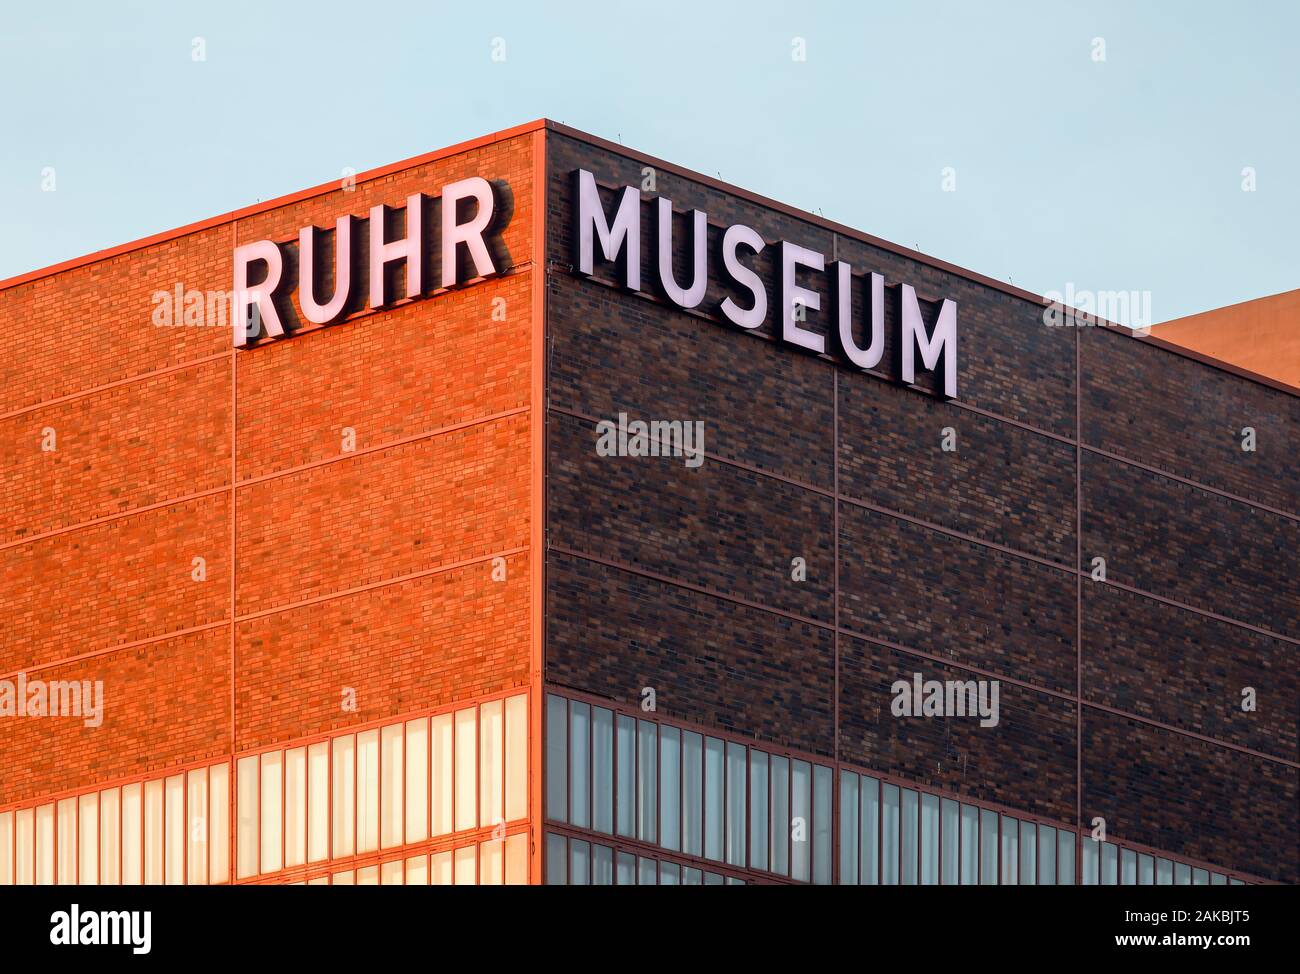 Essen, Ruhr, Rhénanie du Nord-Westphalie, Allemagne - Ruhr Museum de Zeche Zollverein, classé au Patrimoine Mondial de l'UNESCO, Zollverein inscriptions lumineuses sur le fa Banque D'Images